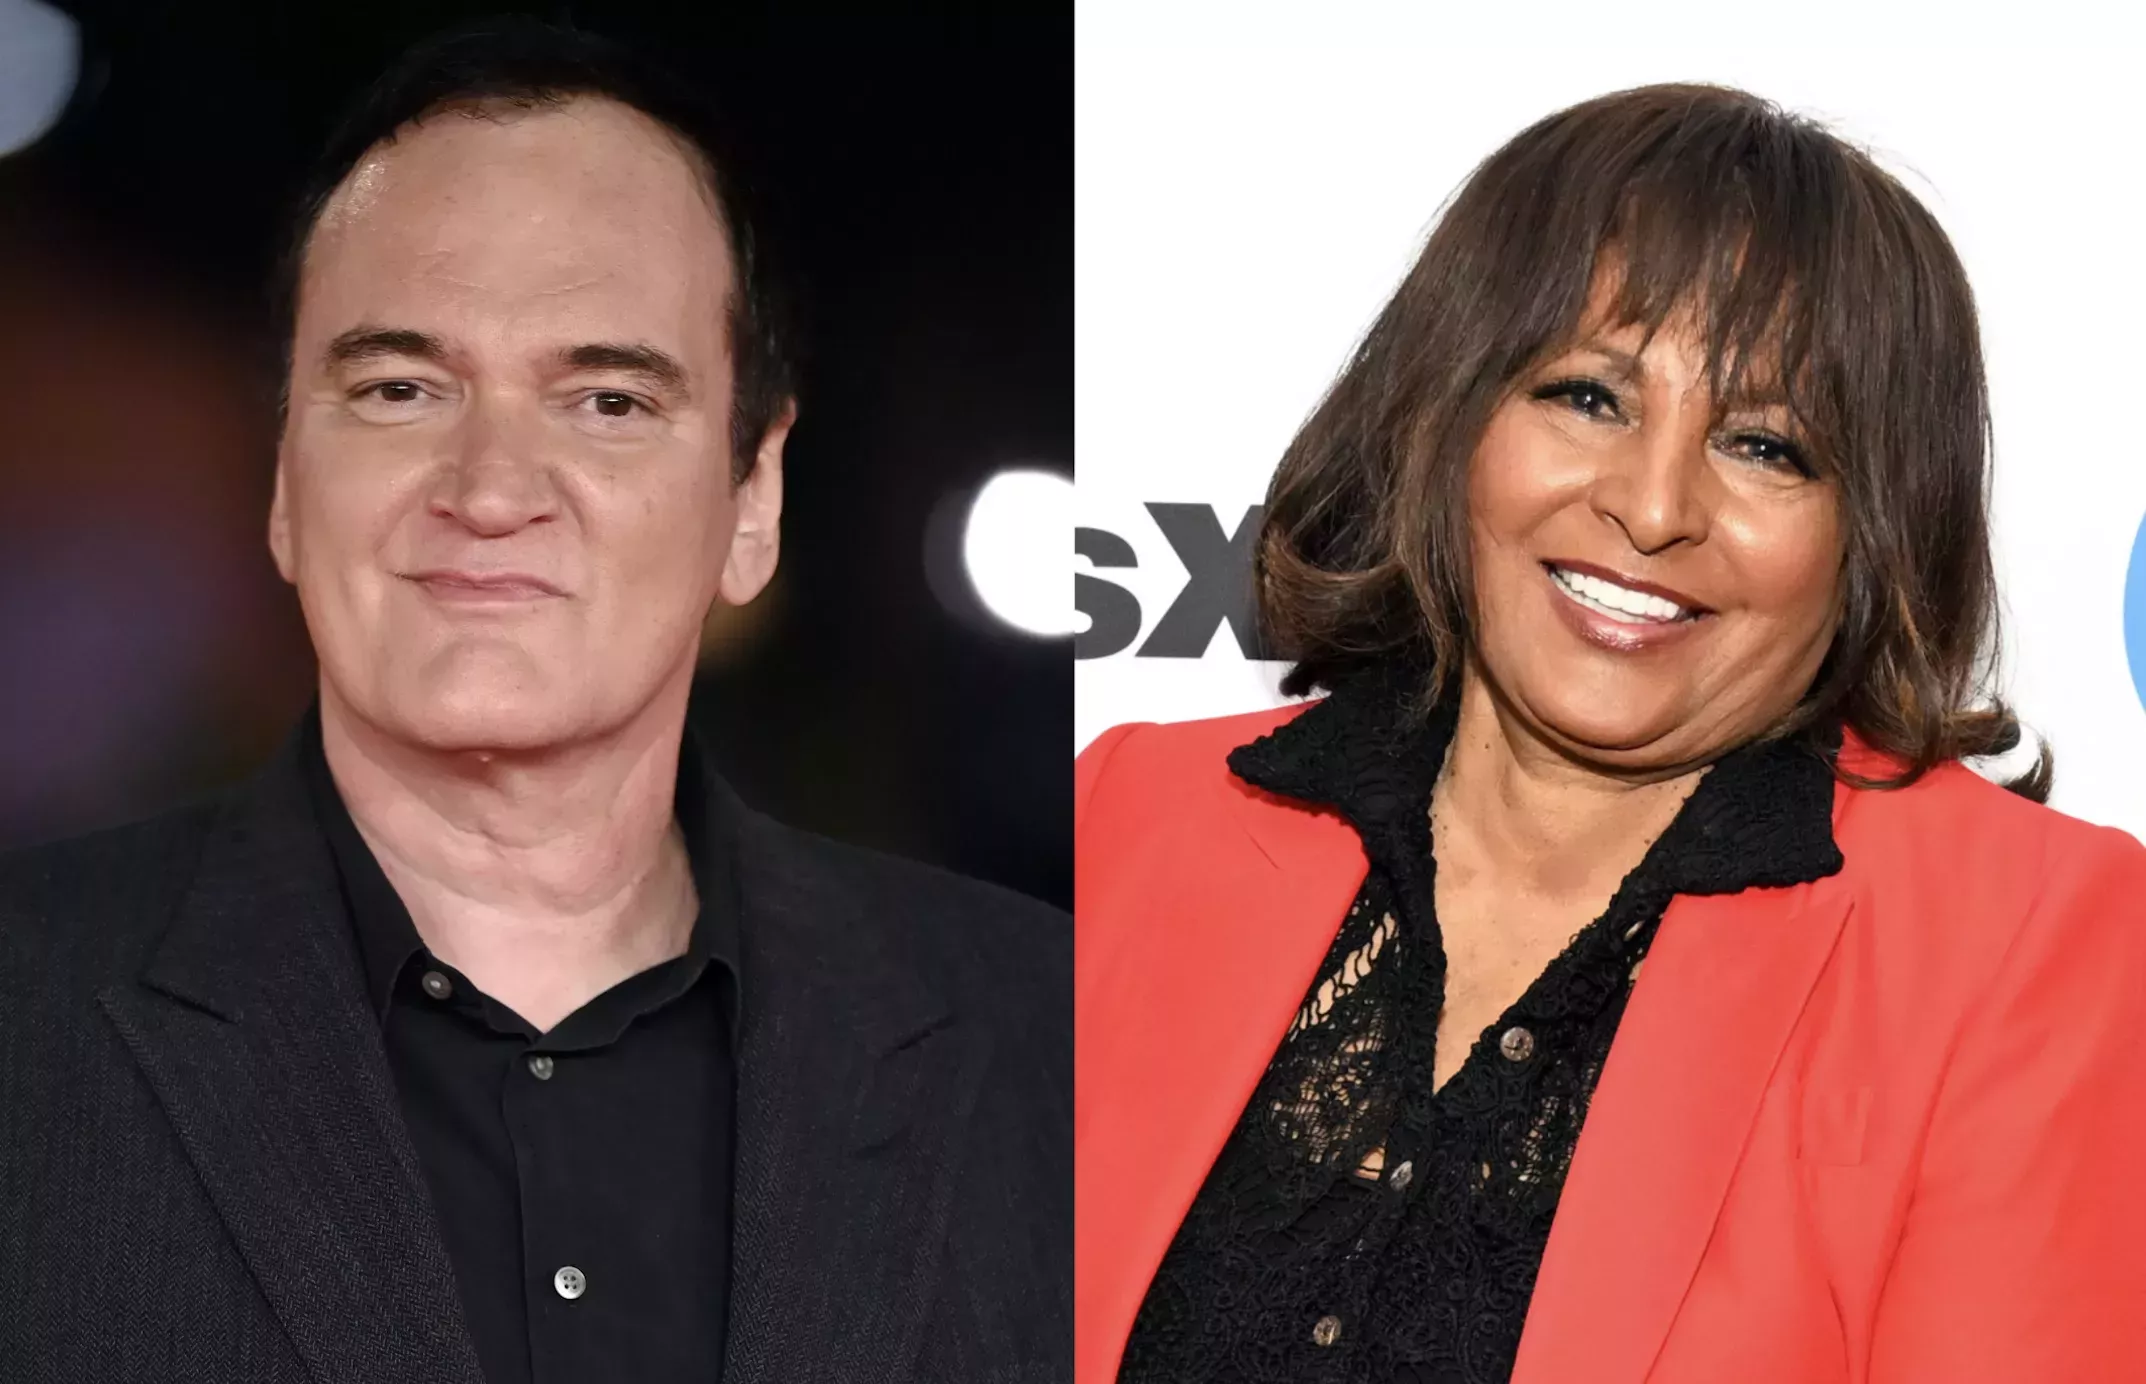 Quentin Tarantino no tiene la culpa de los insultos racistas en sus películas, dice Pam Grier